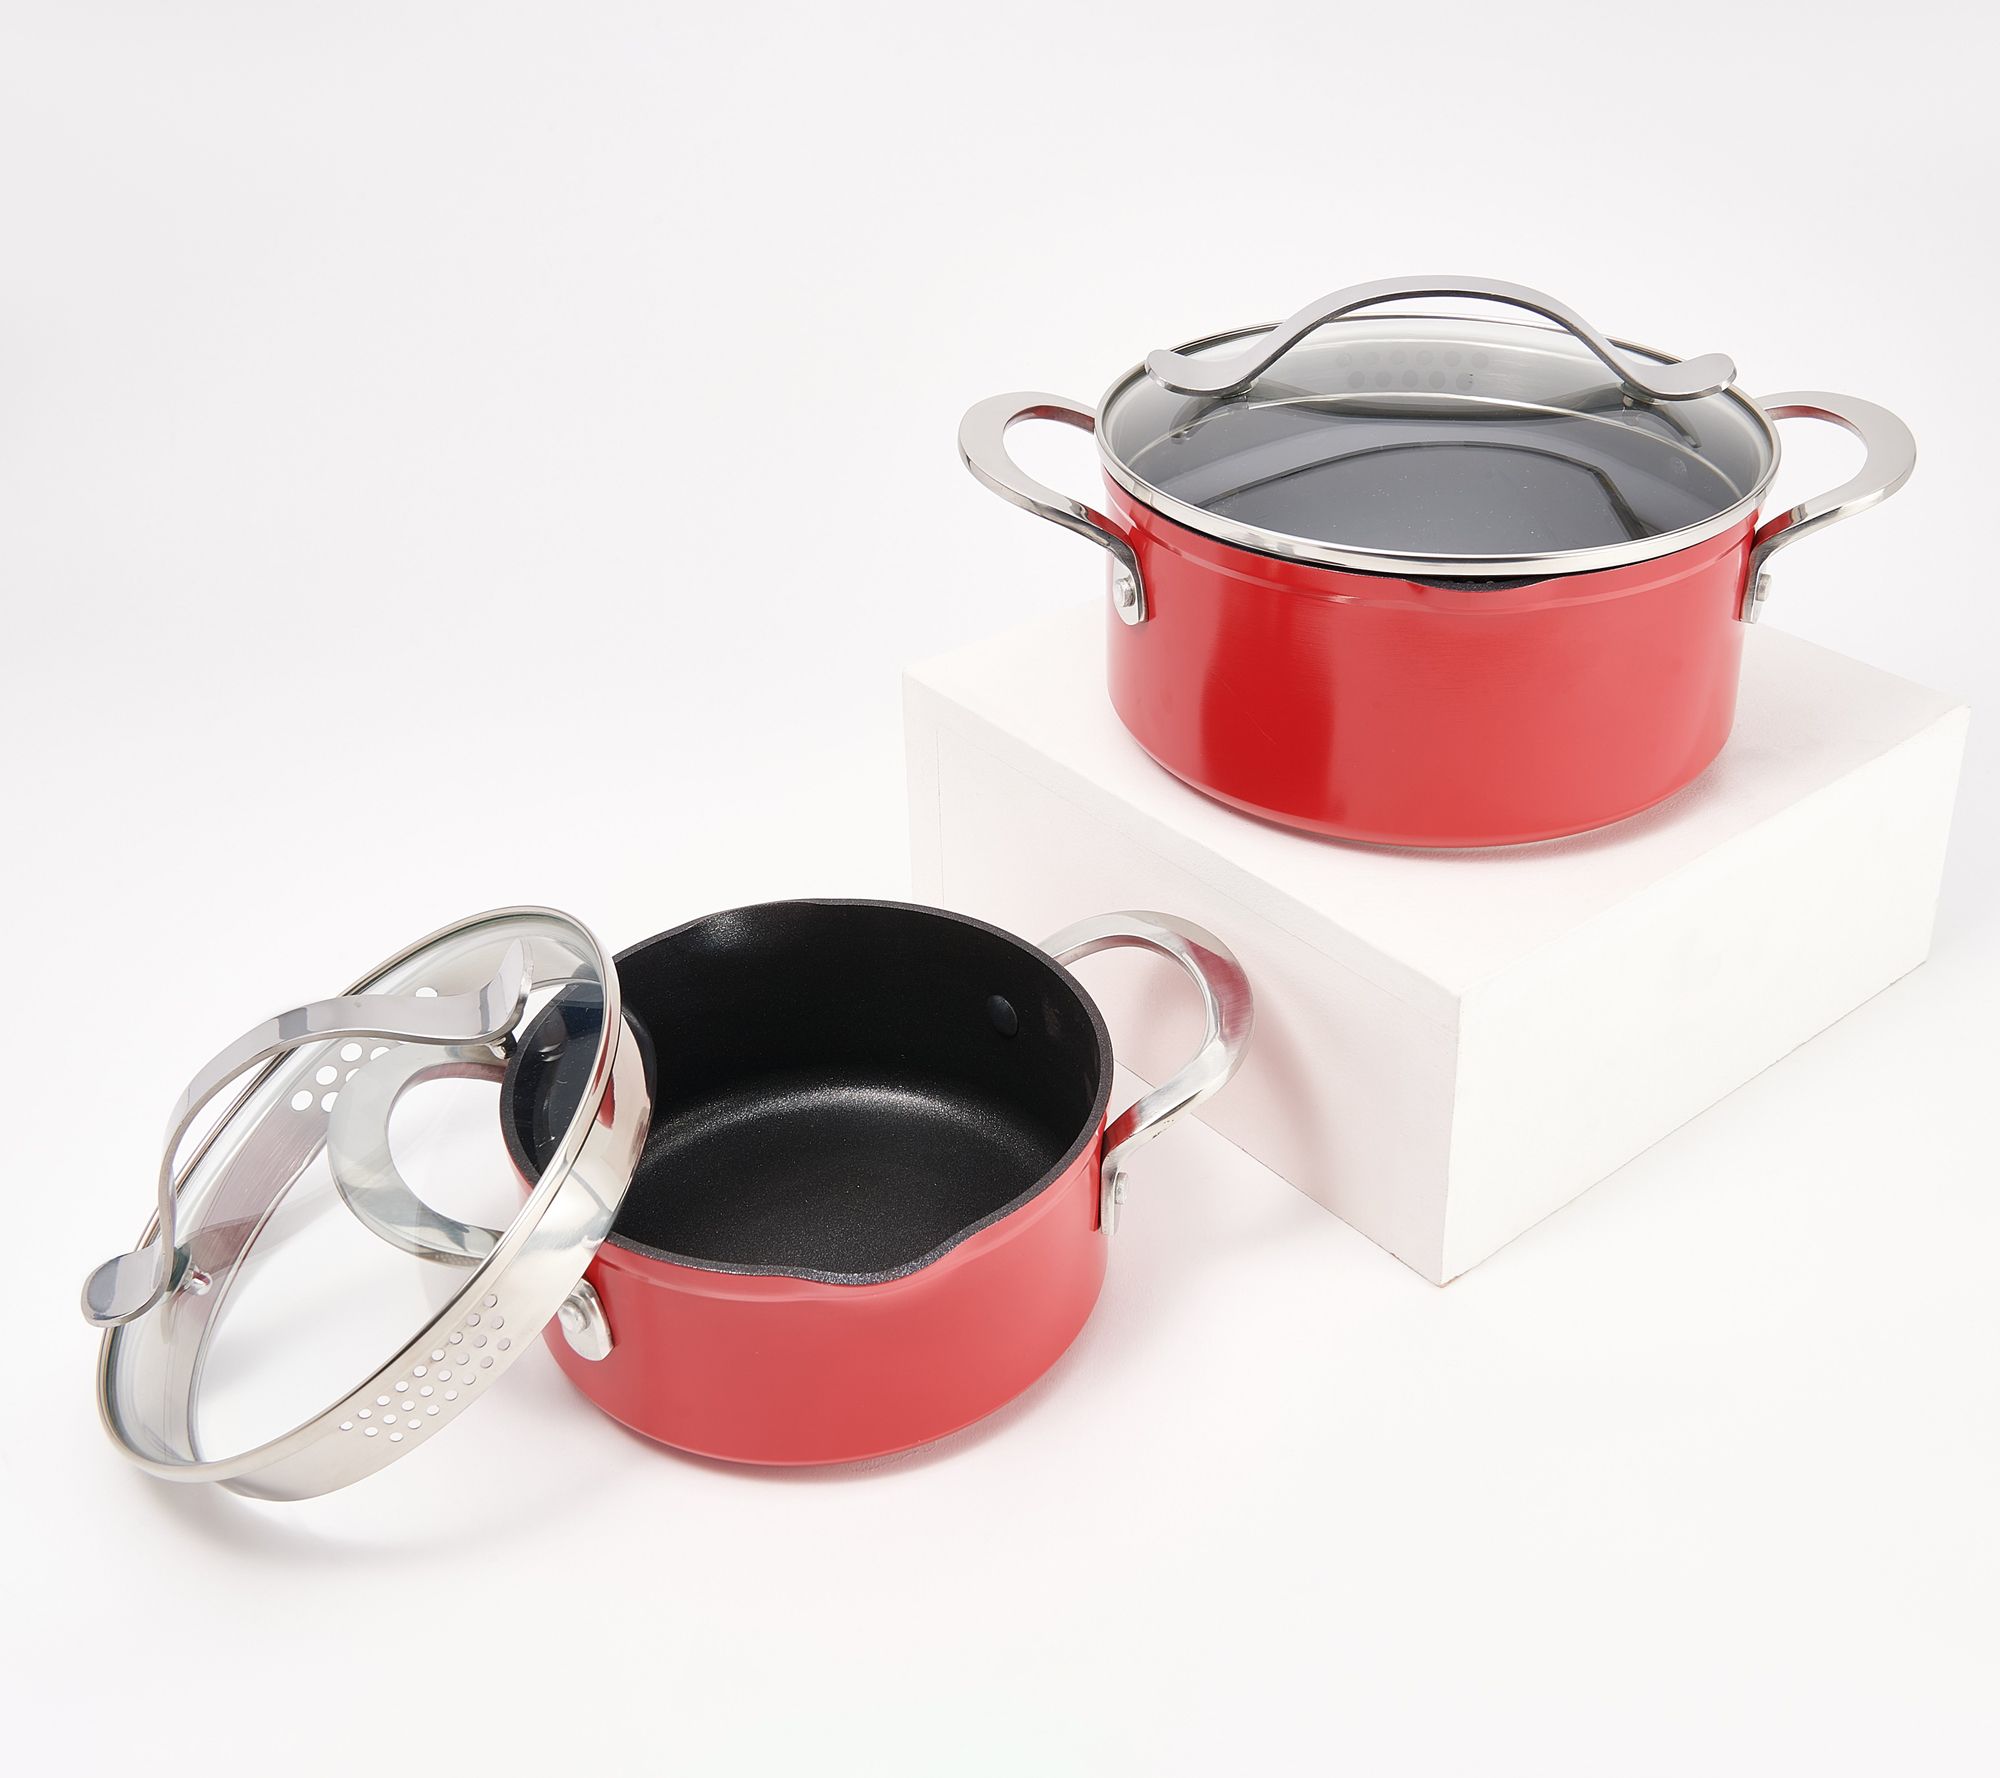 Aluminum Cookware Set 7 Pieces Pots Pans 1.5,2.75,3.75,4.75,5.5,7.0,10 QT  Set